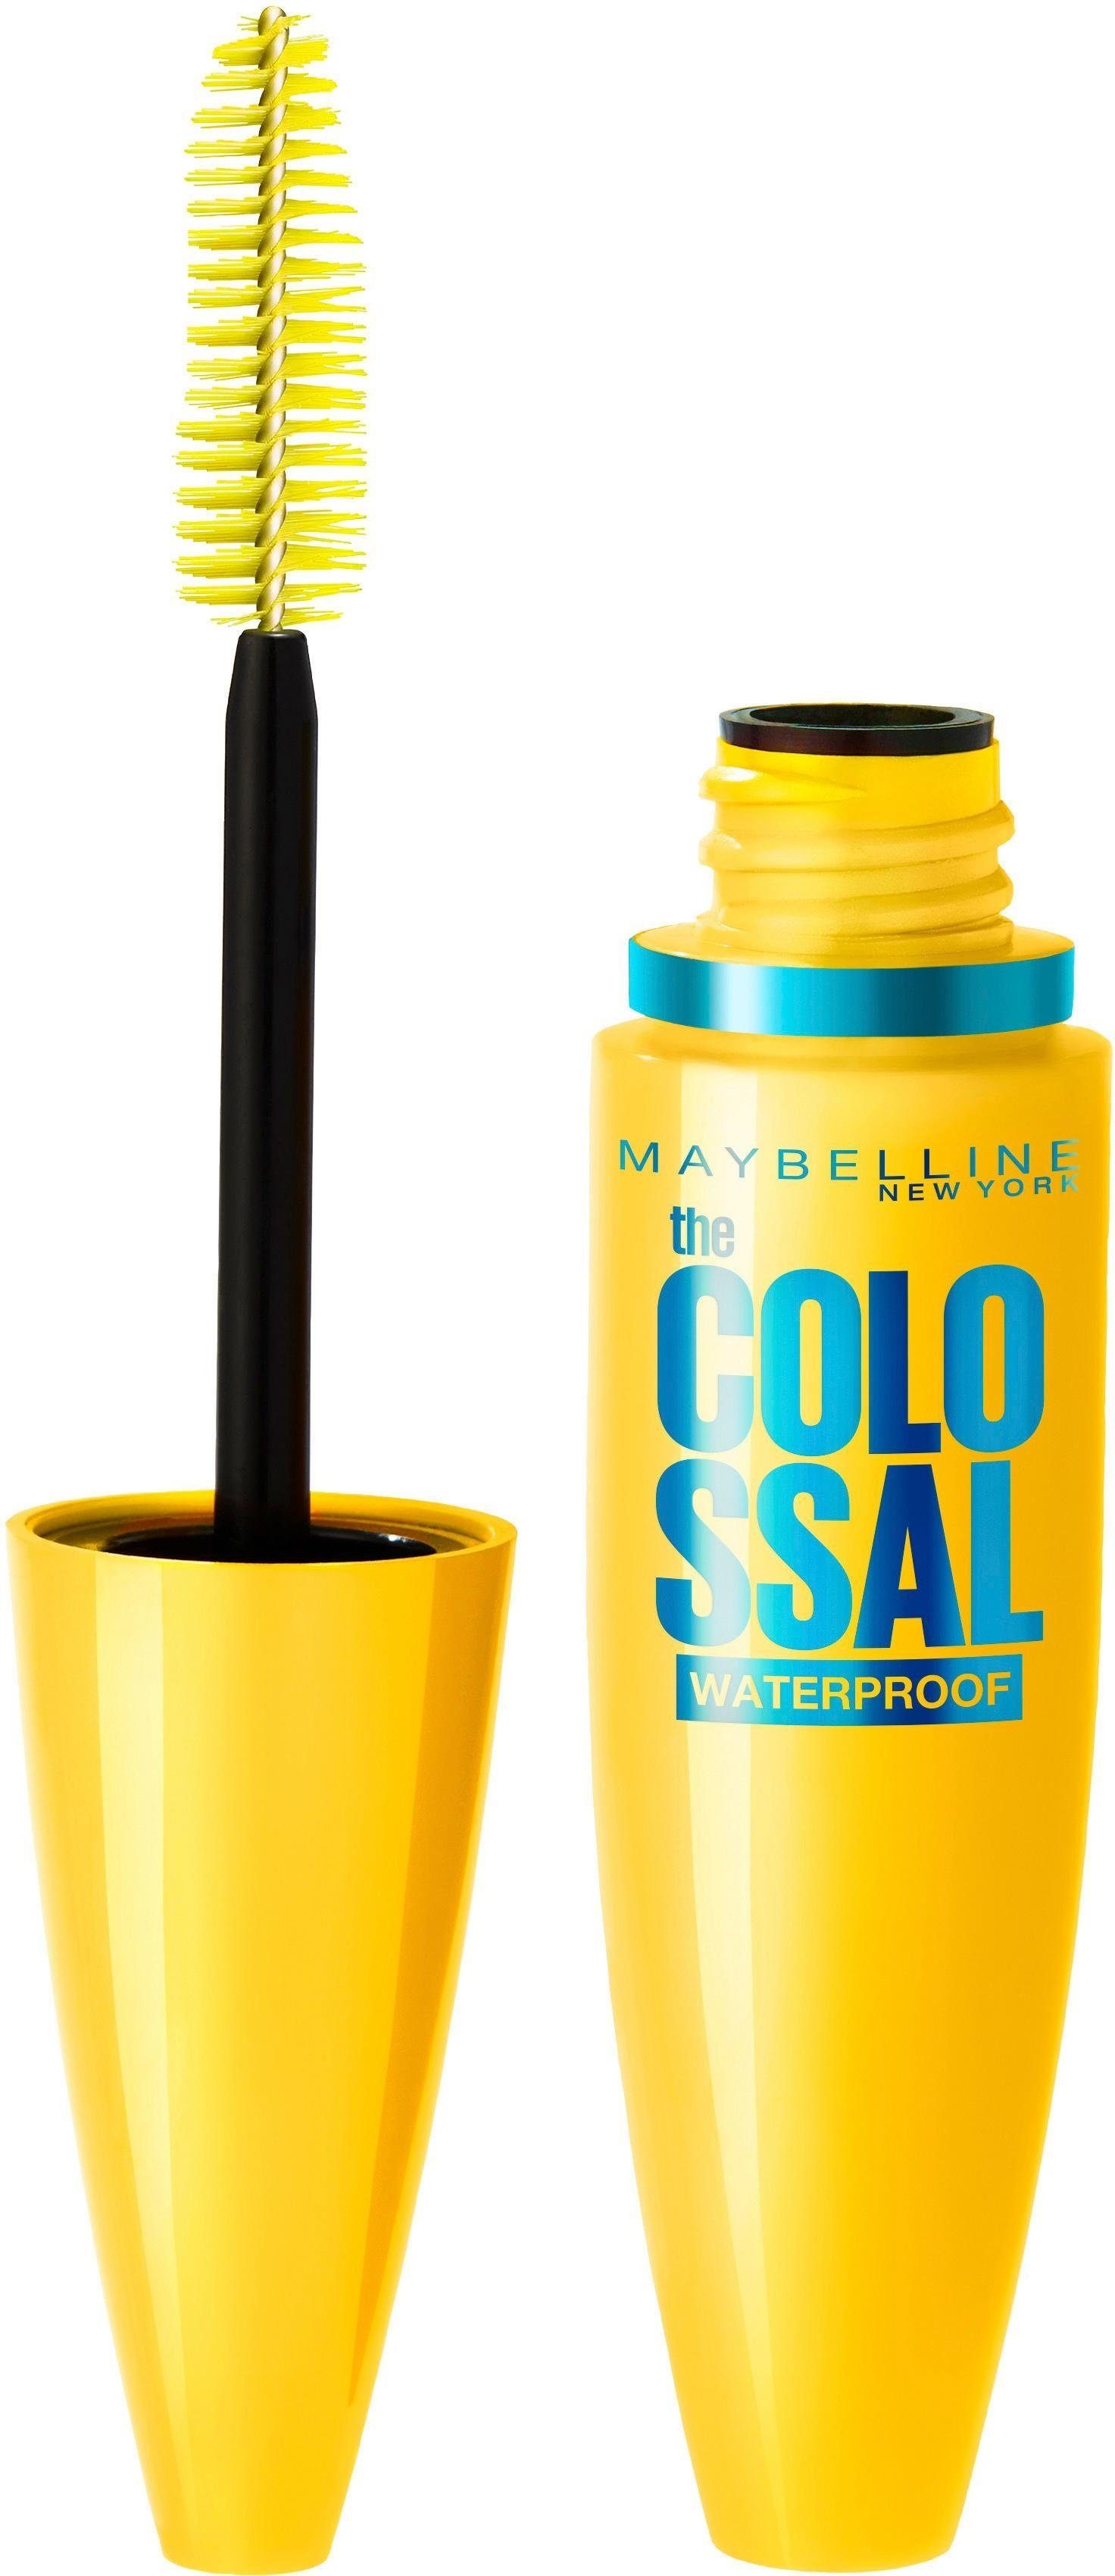 Waterproof, und Collagen Bienenwachs VEX Colossal YORK Mascara MAYBELLINE Mit NEW